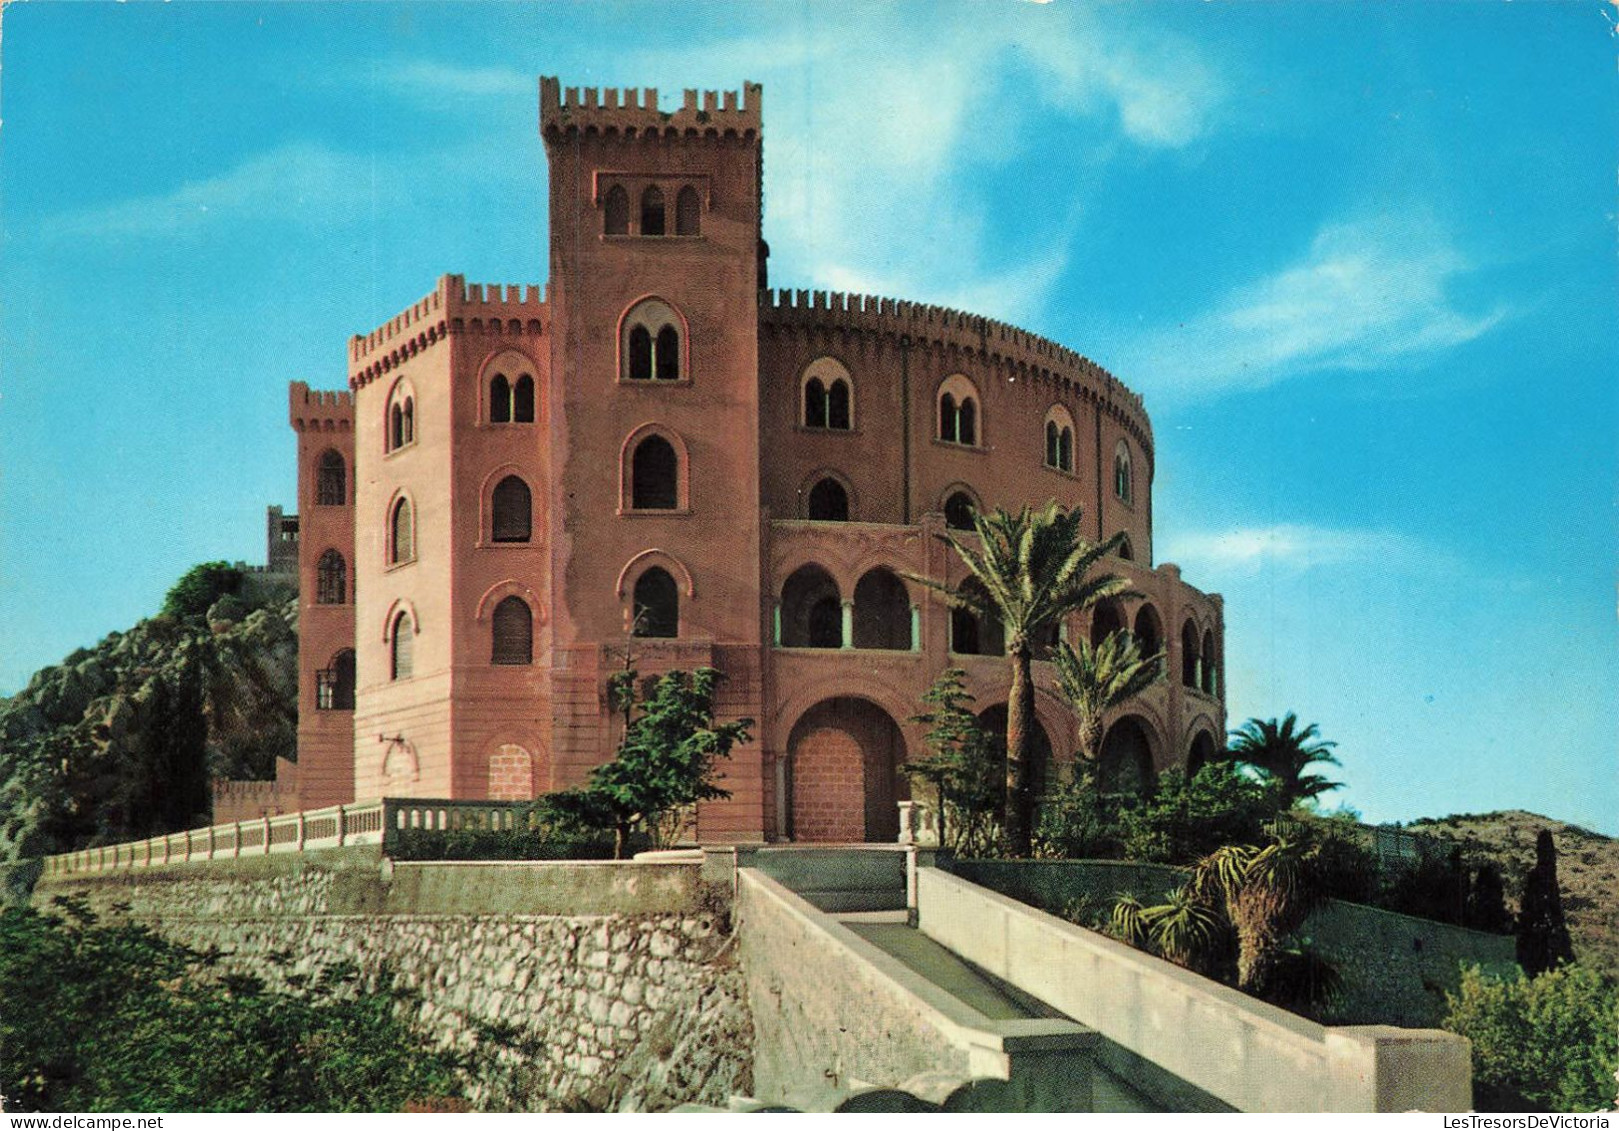 ITALIE - Palermo - Vue Sur Le Château Utveggio - Vue De L'extérieure - Carte Postale Ancienne - Palermo